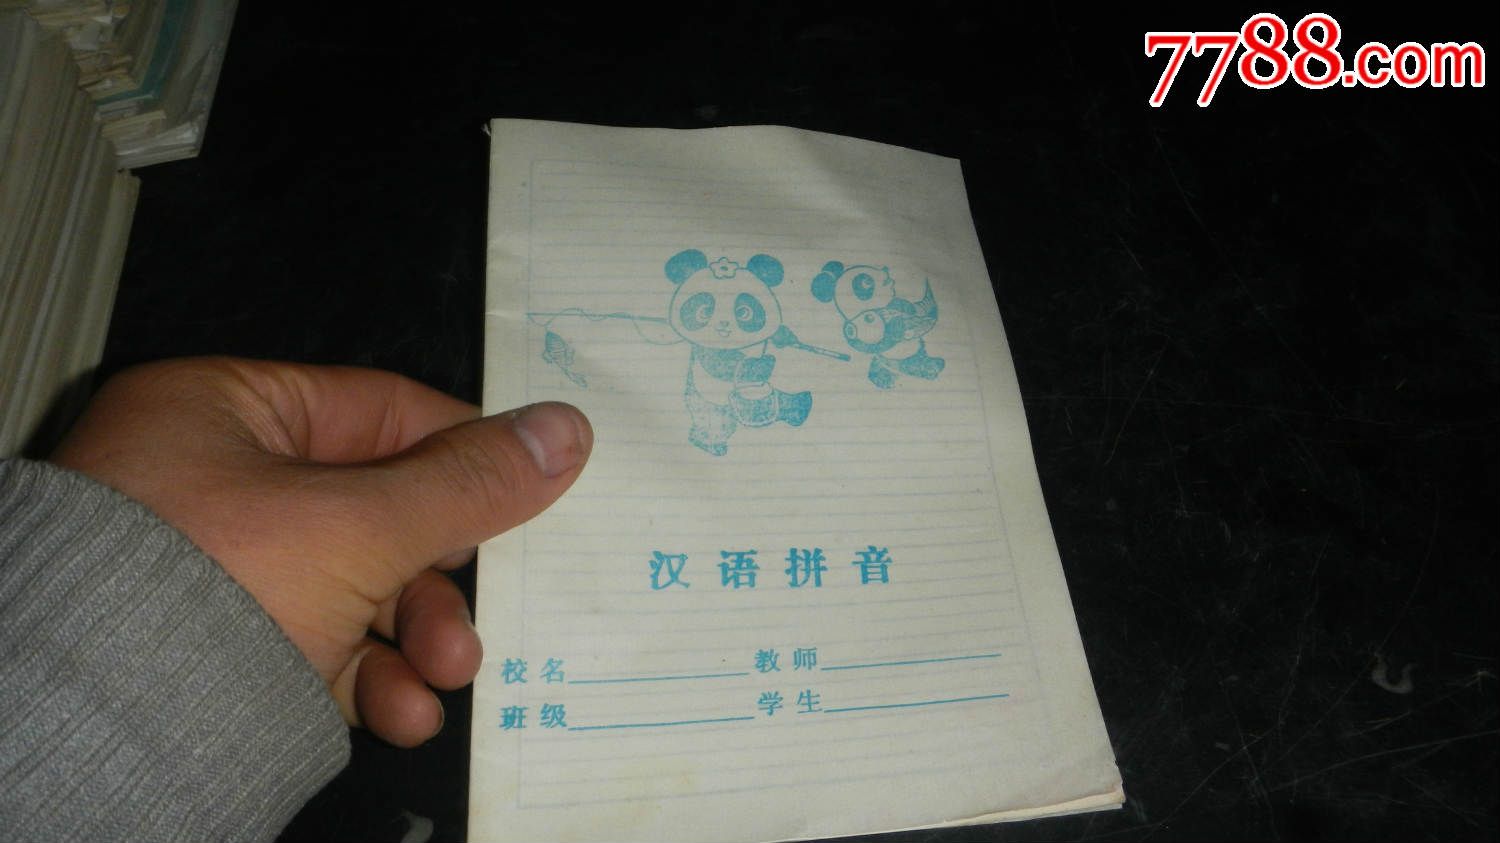 80年代的练习本-汉语拼音-熊猫钓鱼-价格:6元-